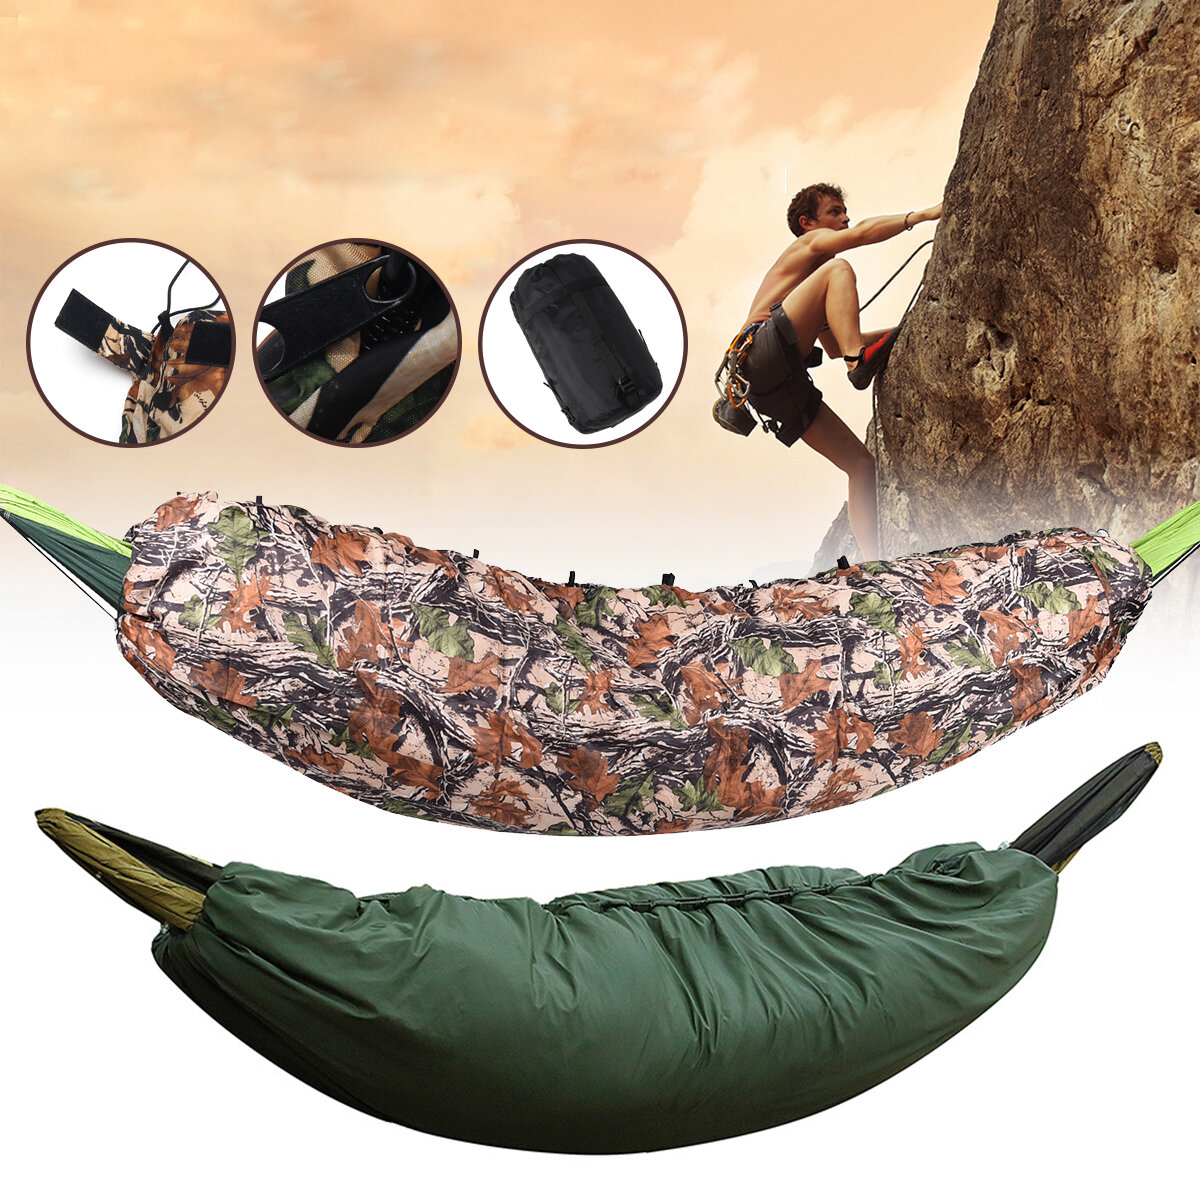 Camping-Schlafsack mit Thermoisolierung, Hängematte und ultraleichter Unterlage für Reisen und Klettern.